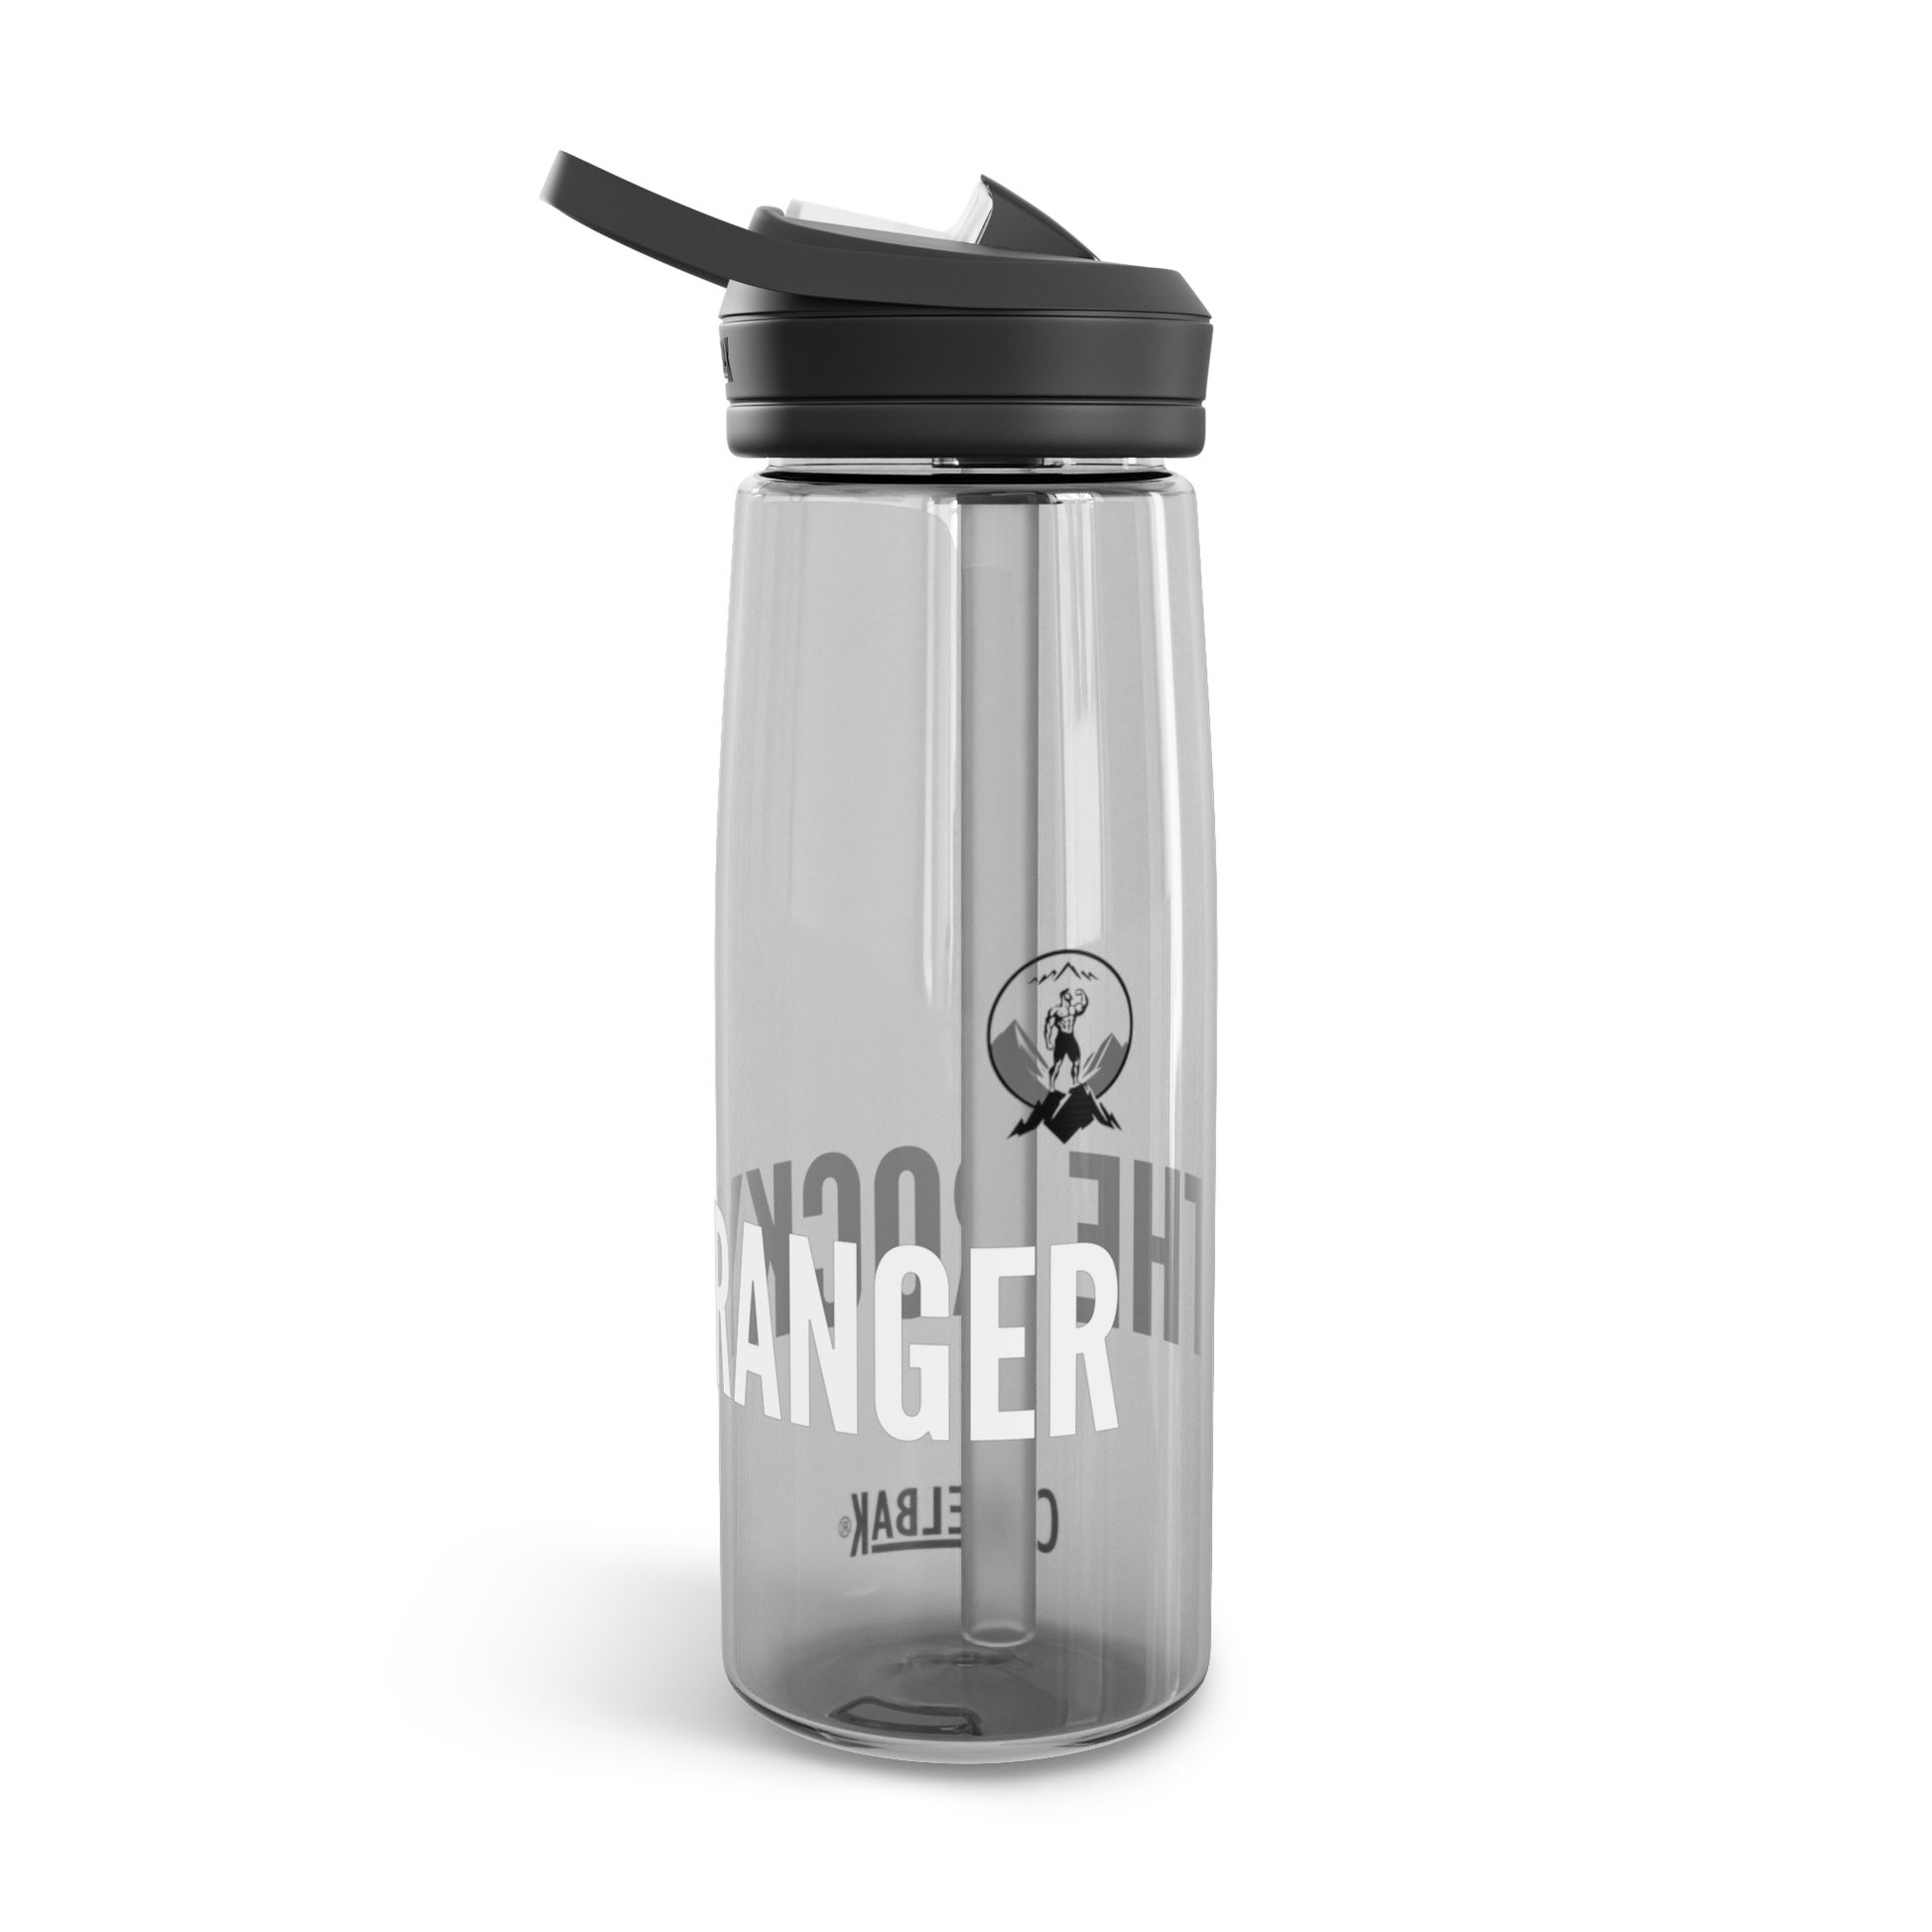 The Ranger Bottle - CamelBak Eddy®  Water Bottle, 20oz\25oz